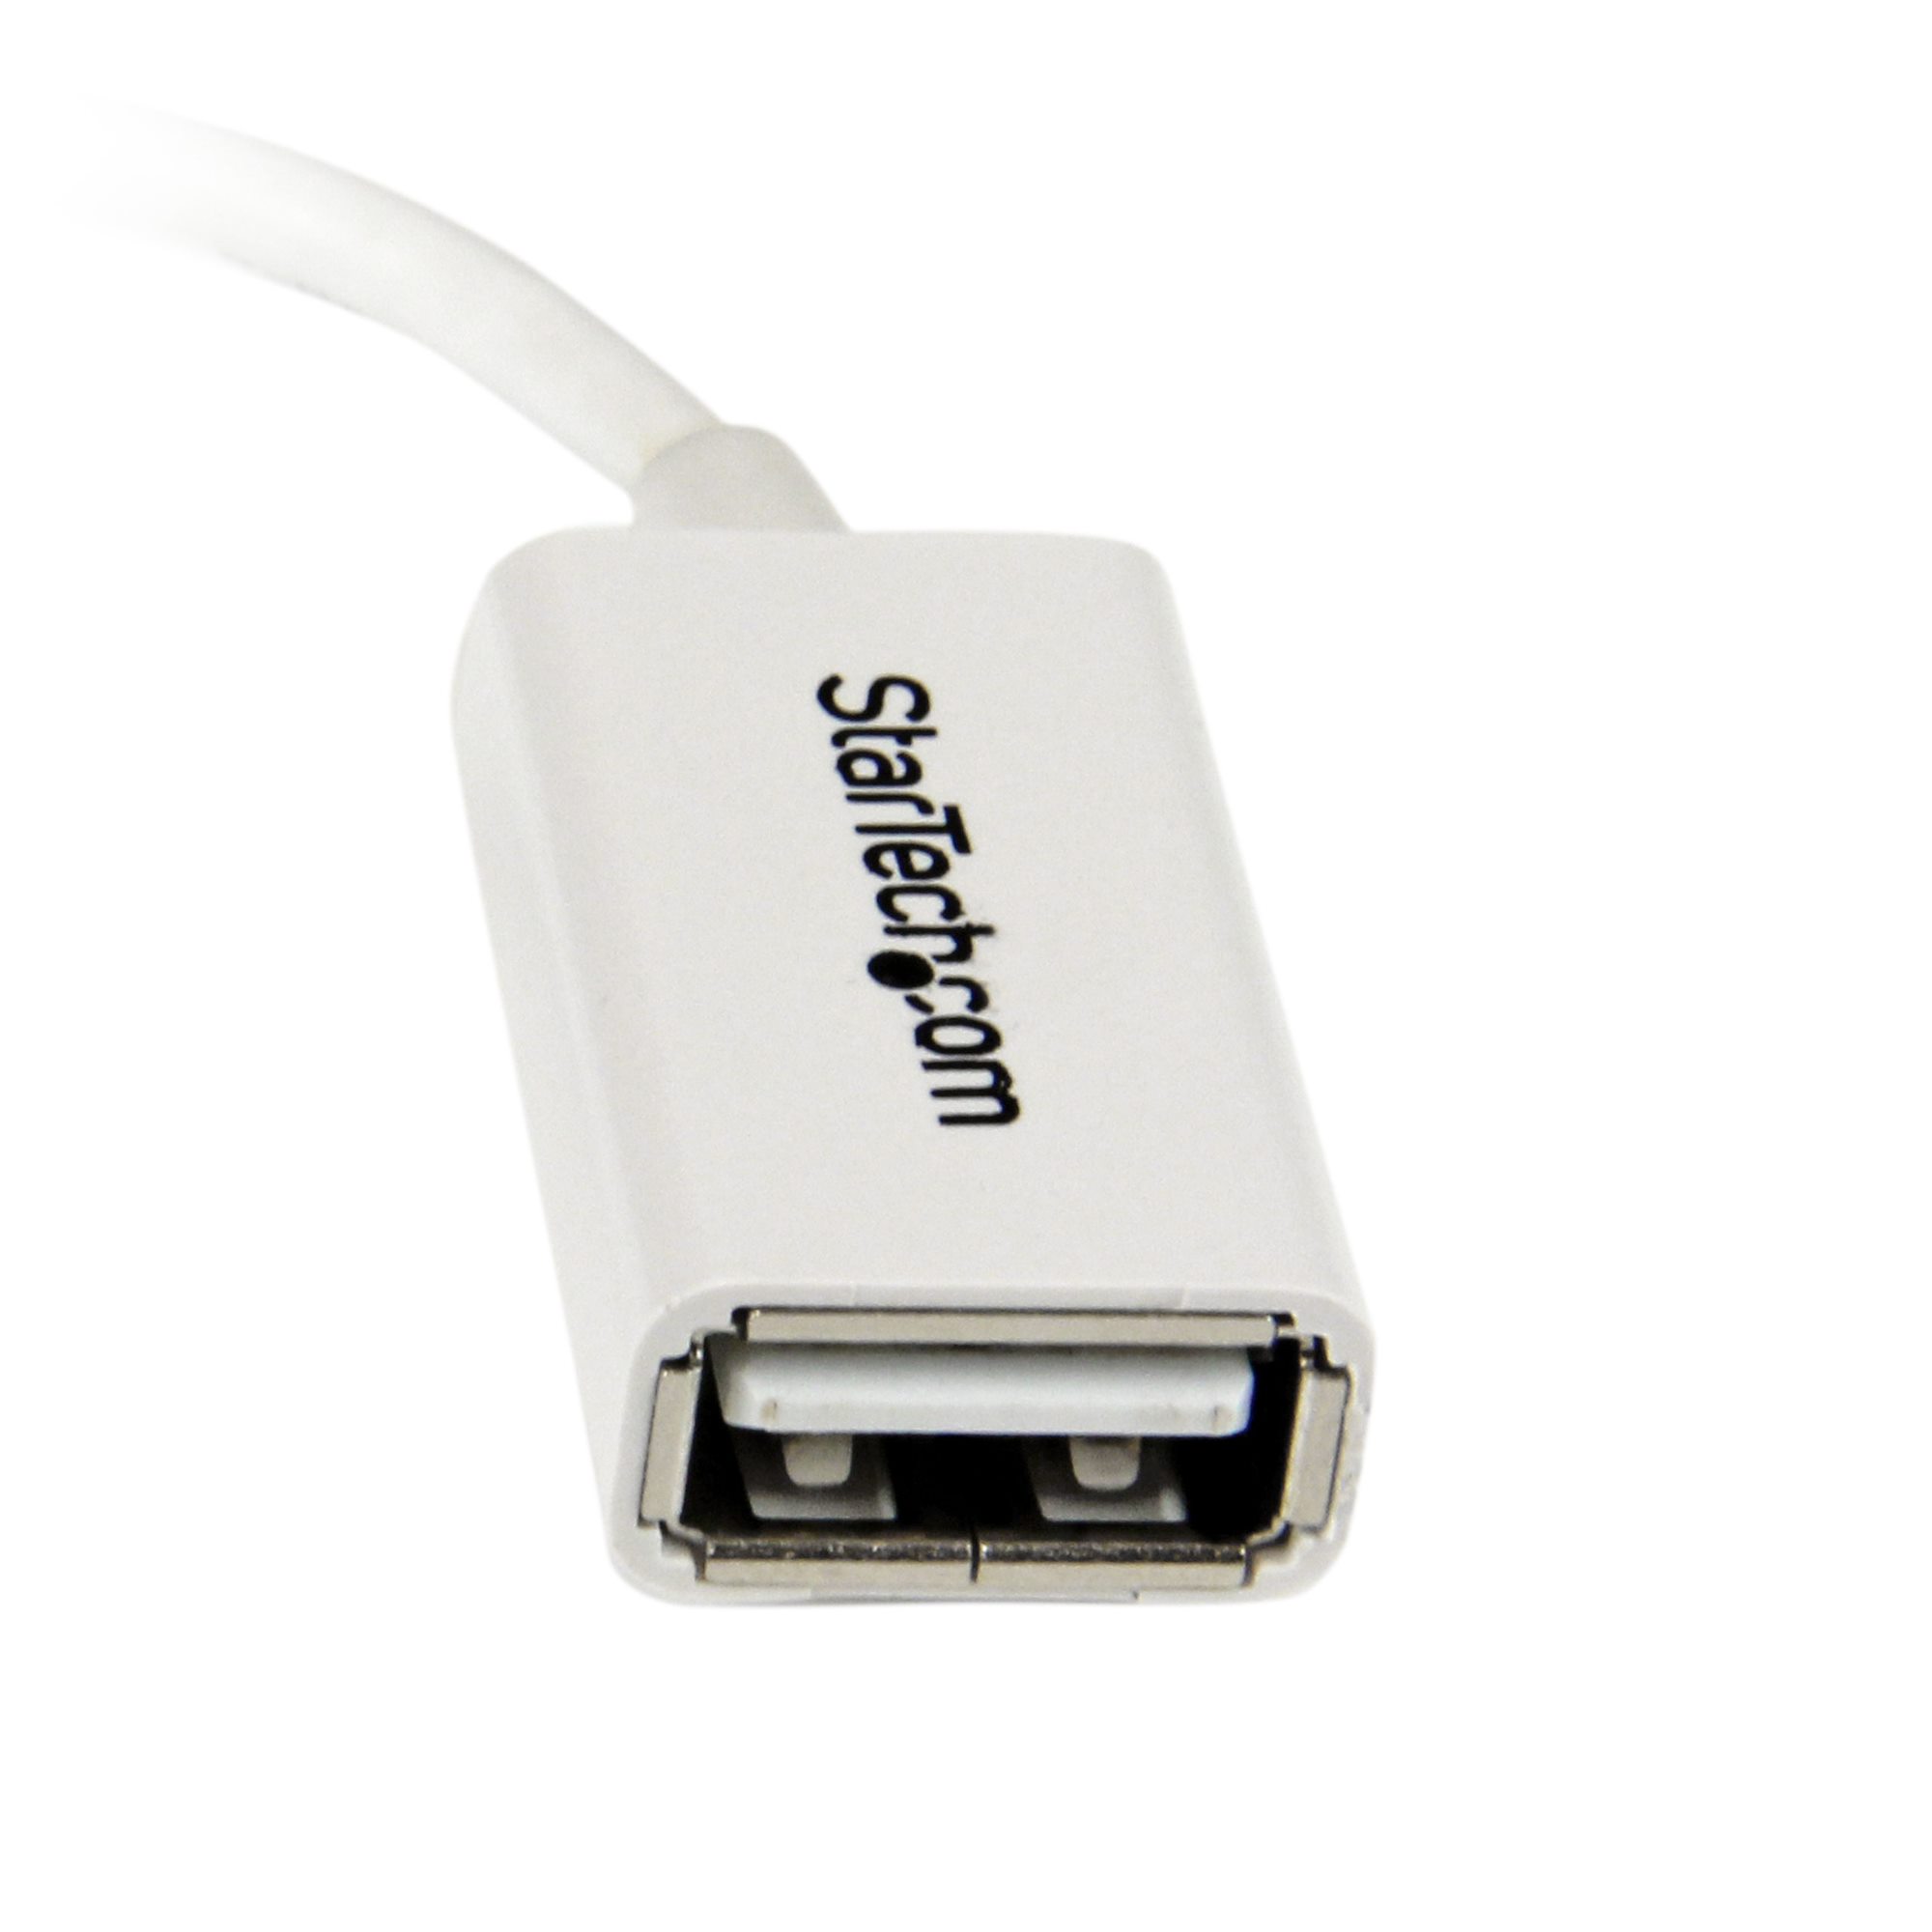 Adaptateur OTG Micro USB vers USB 12 cm - Adaptateurs USB (USB 2.0)